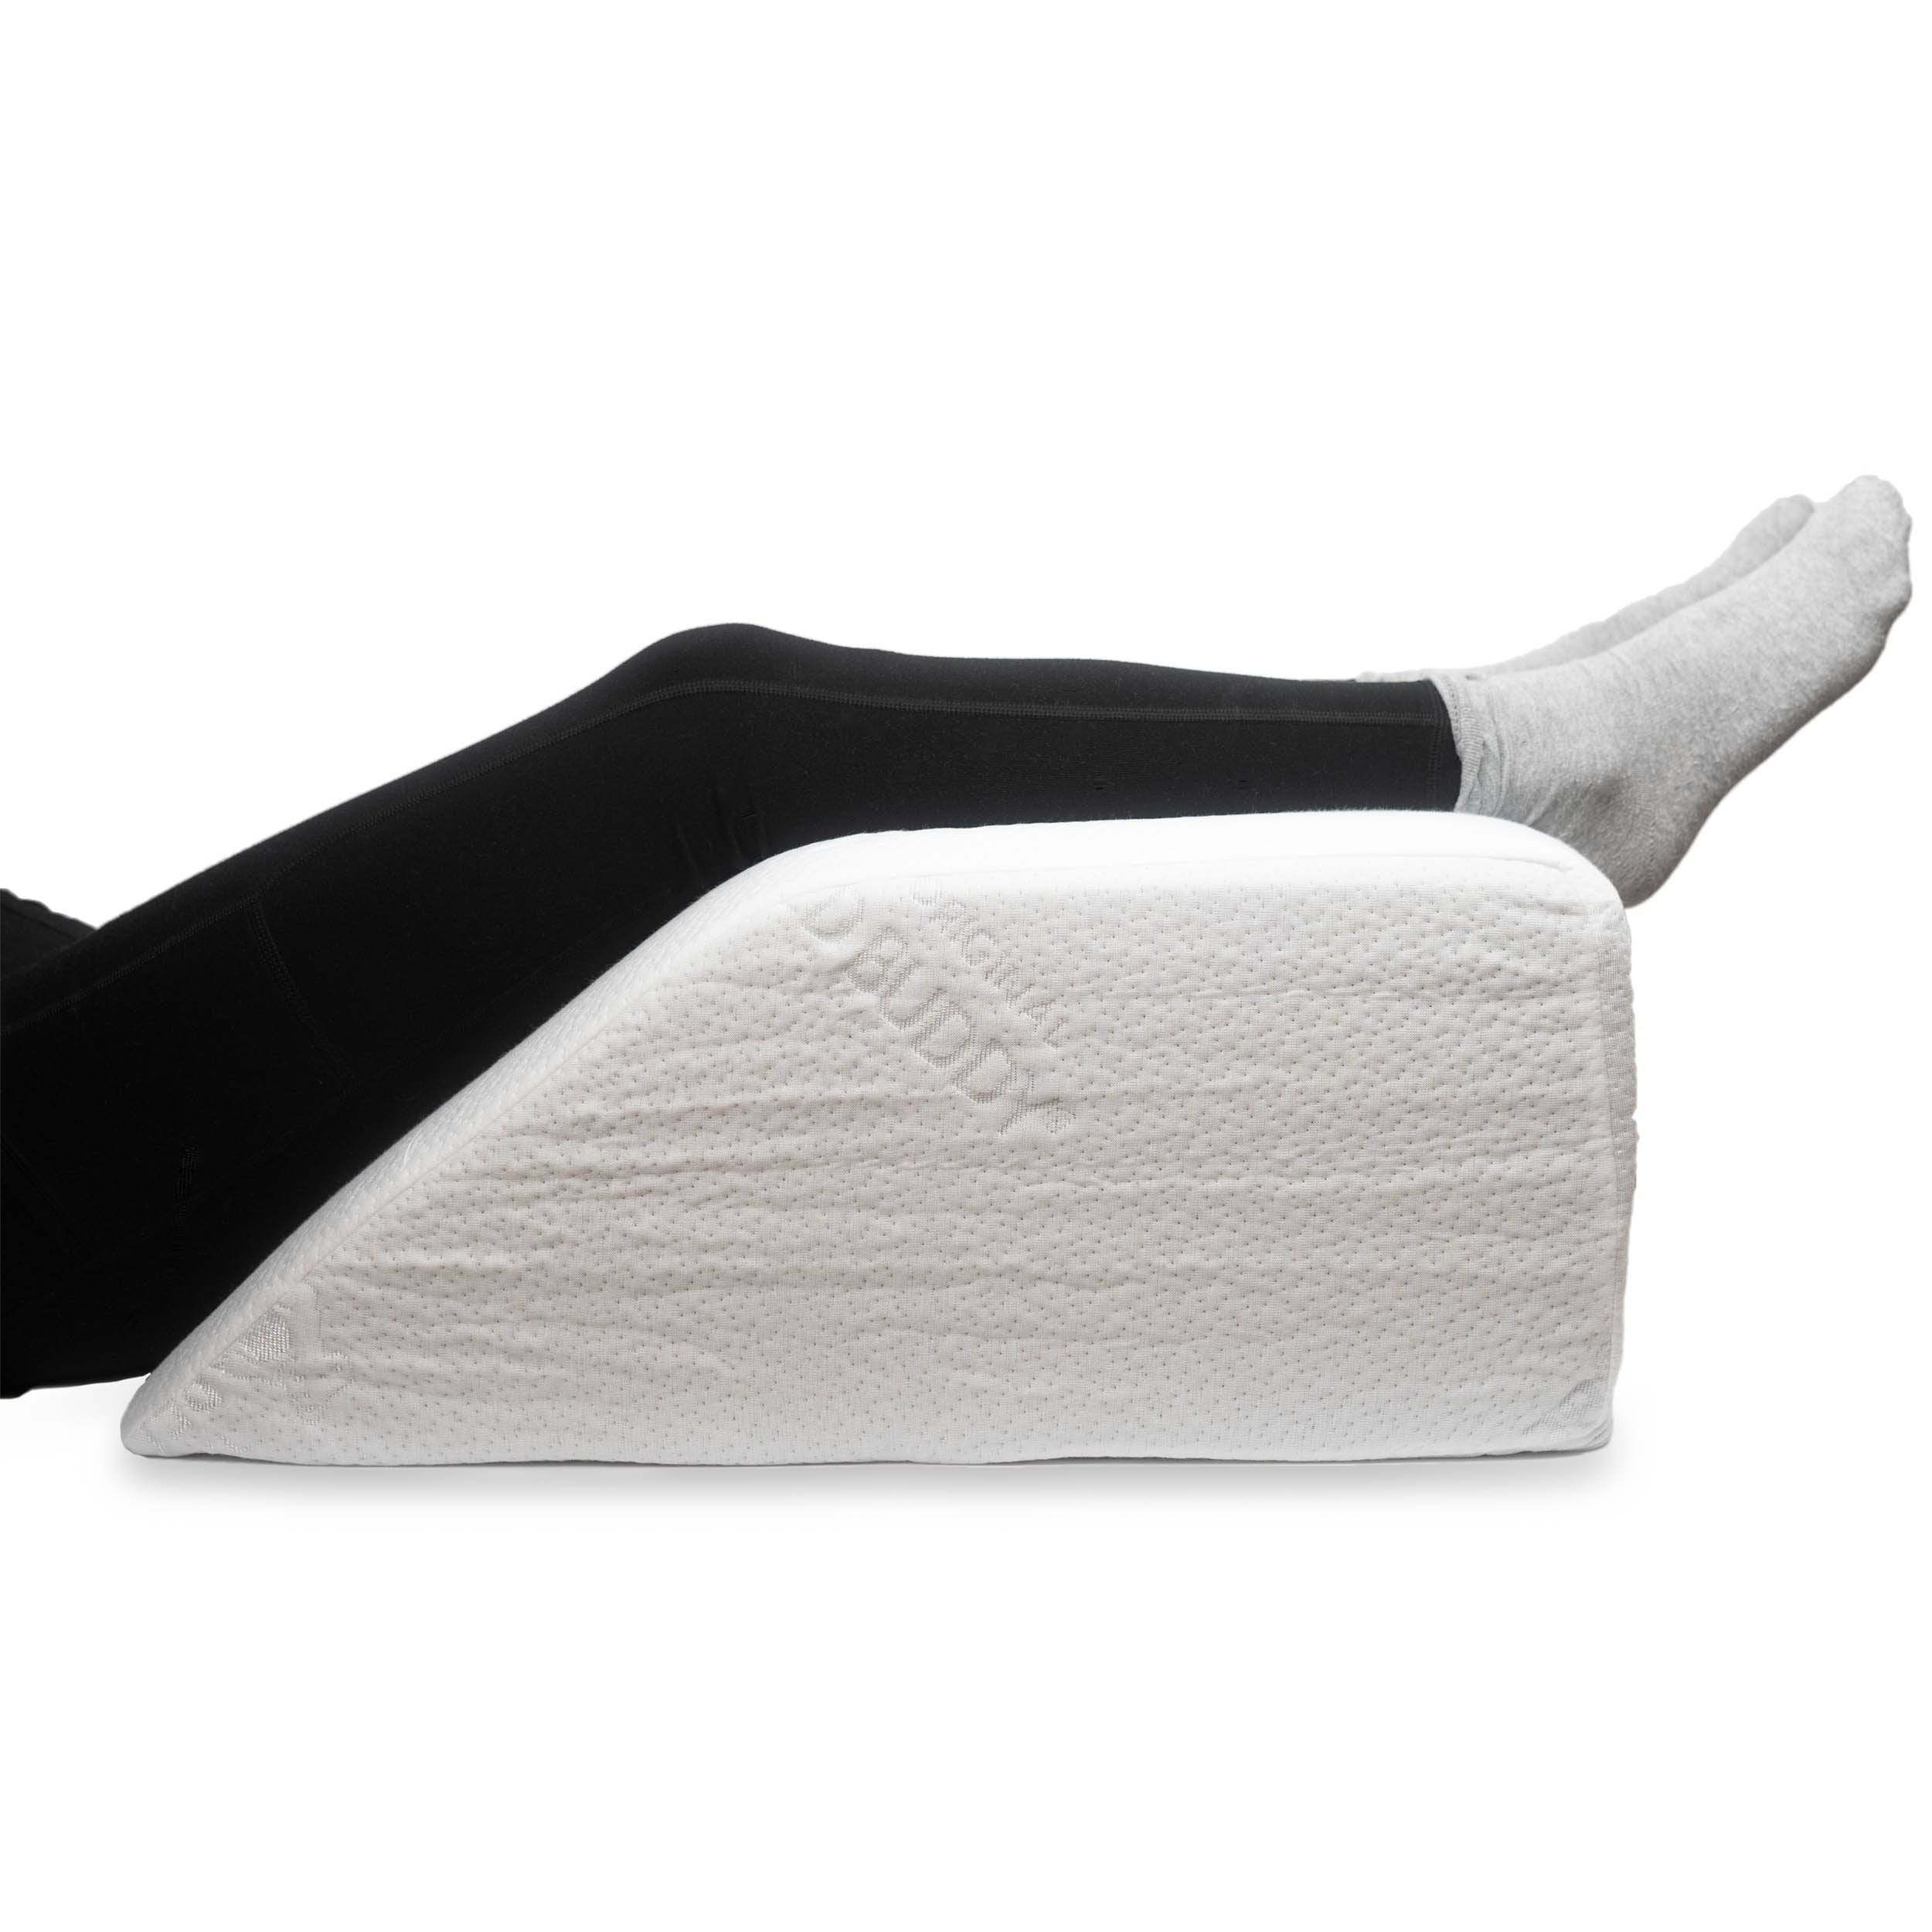 https://carex.com/cdn/shop/products/carex-health-brands-pillow-10-bed-buddy-leg-wedge-pillows-28288362315881.jpg?v=1679934461